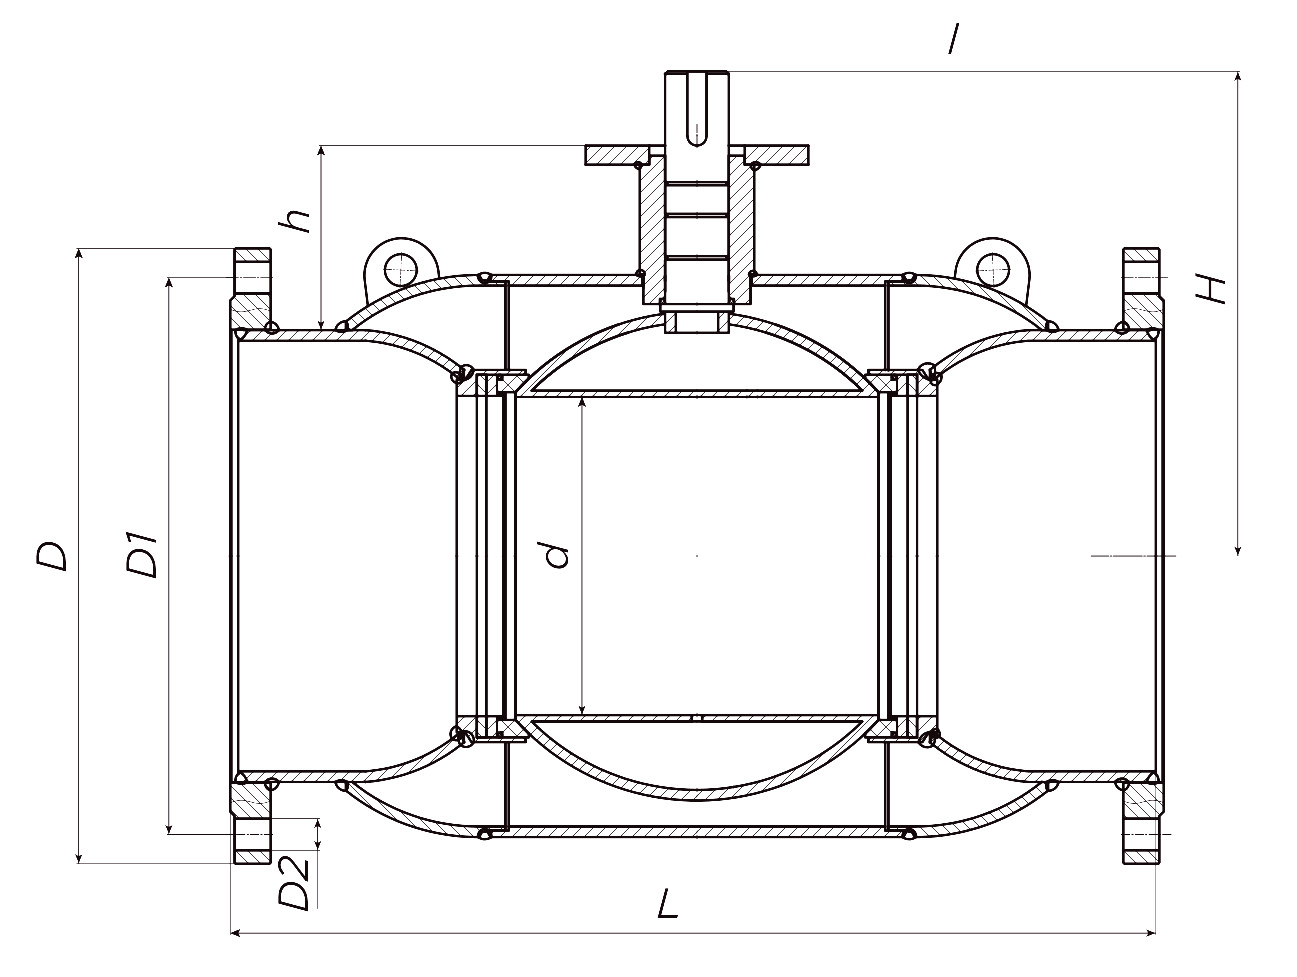 Кран шаровой ALSO КШ.Ф.Р.350.25-01 Ду350 Ру25 стандартнопроходной, присоединение - фланцевое, корпус - сталь 20, уплотнение - PTFE, под редуктор/привод